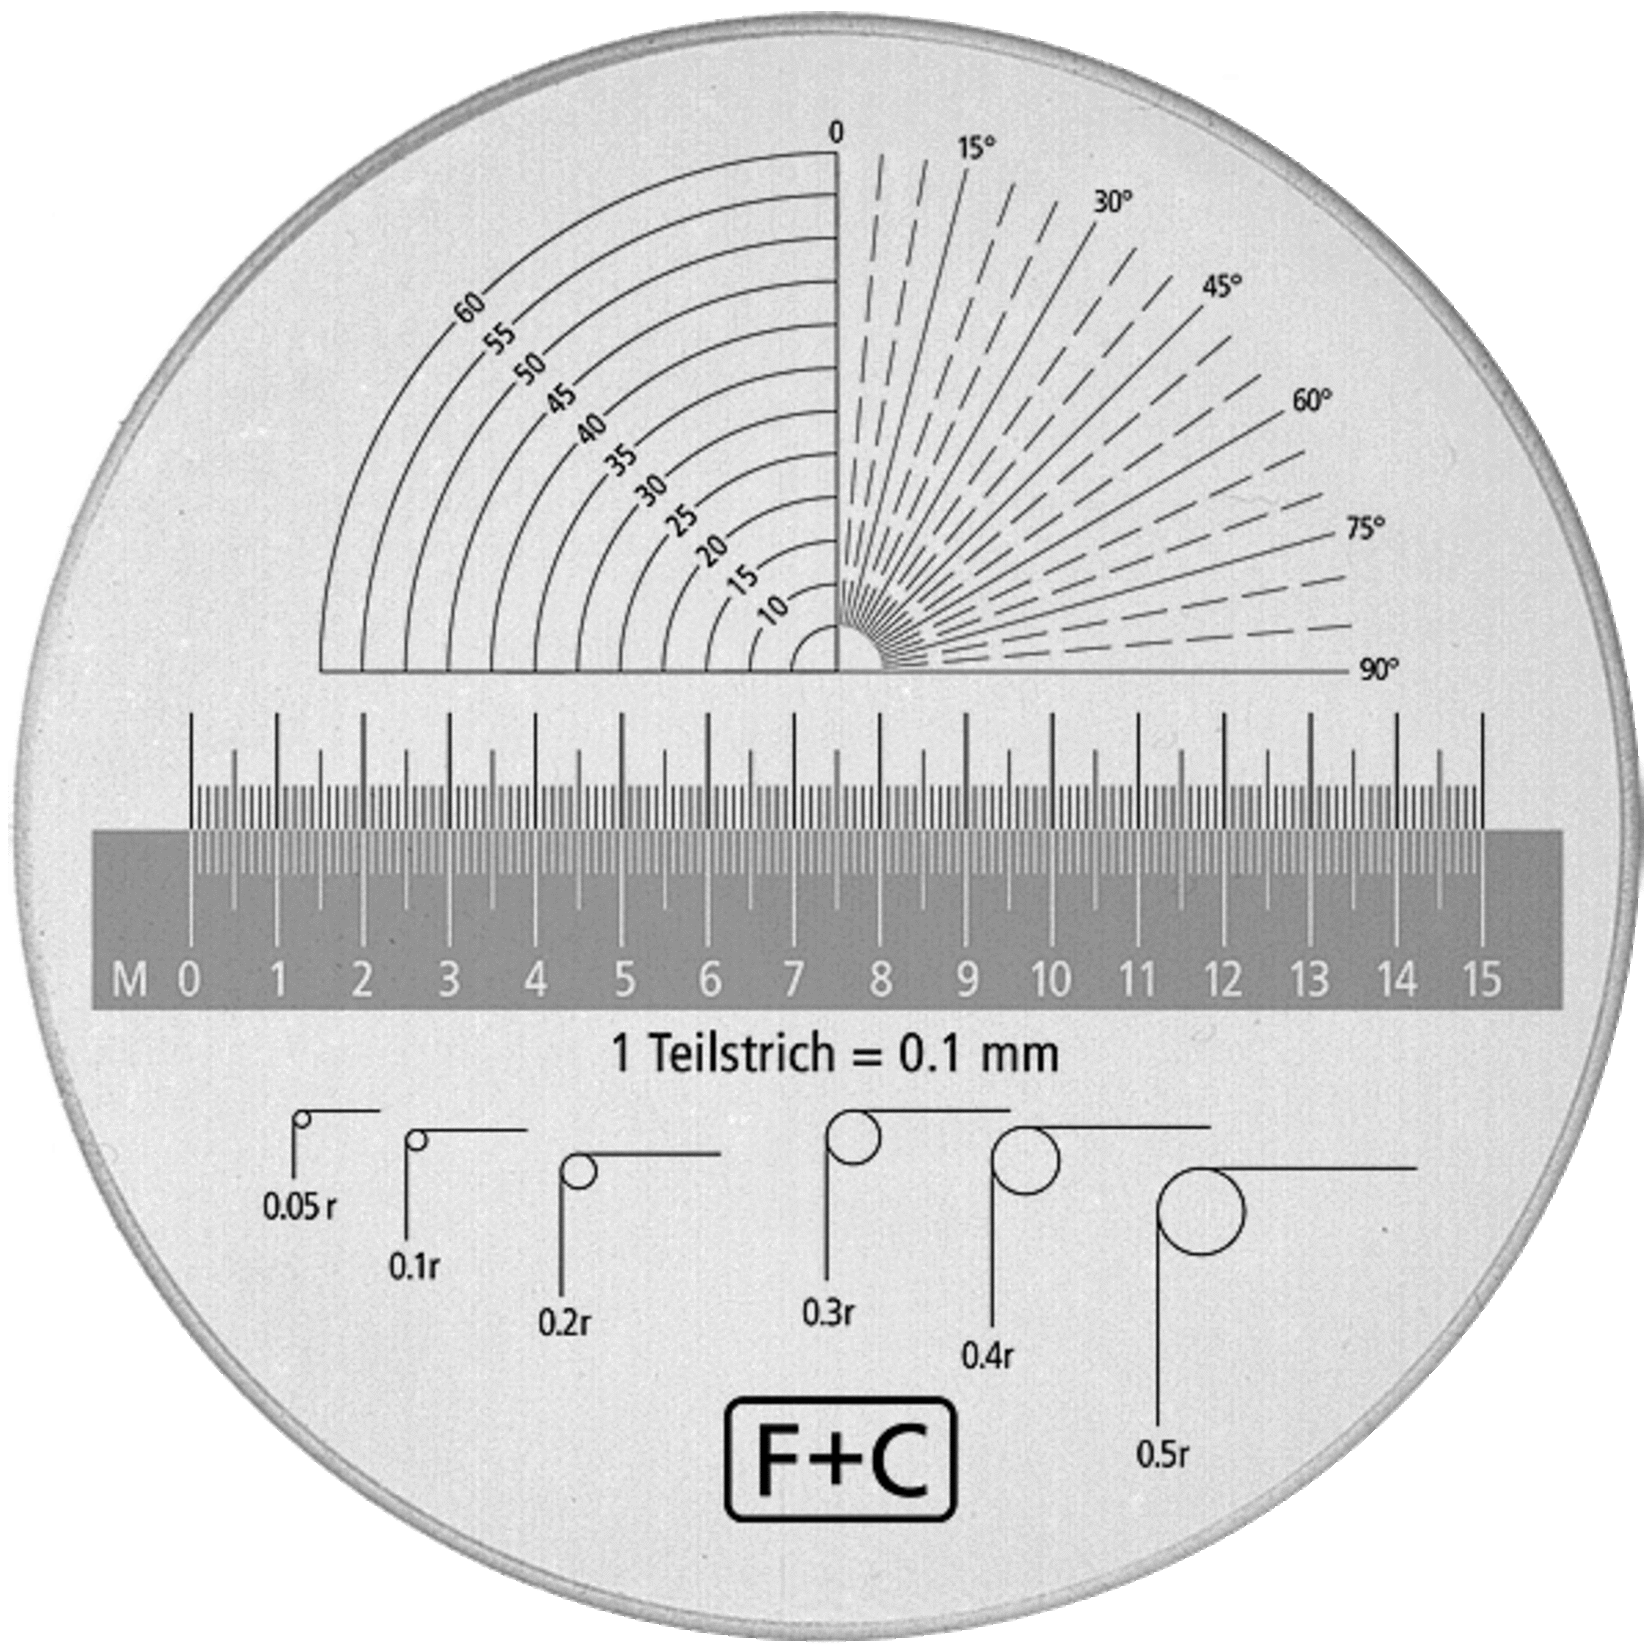 F & C Lenti di misura con ingrandimento 8x in due versioni